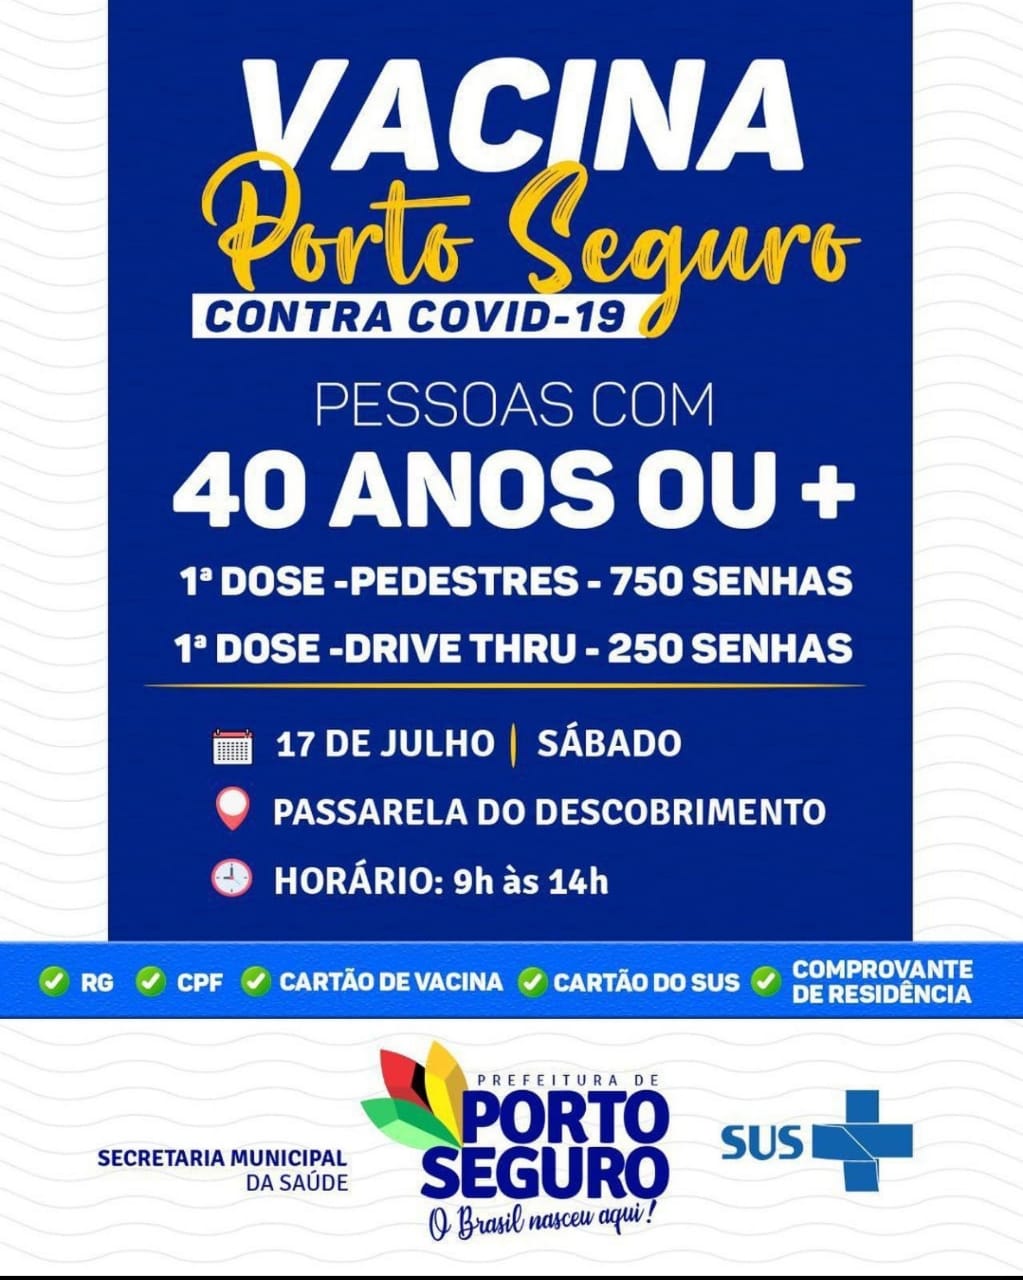 Neste Sábado Vacina Contra Covid-19 para pedestres e sistema Drive Thru em Porto Seguro 2